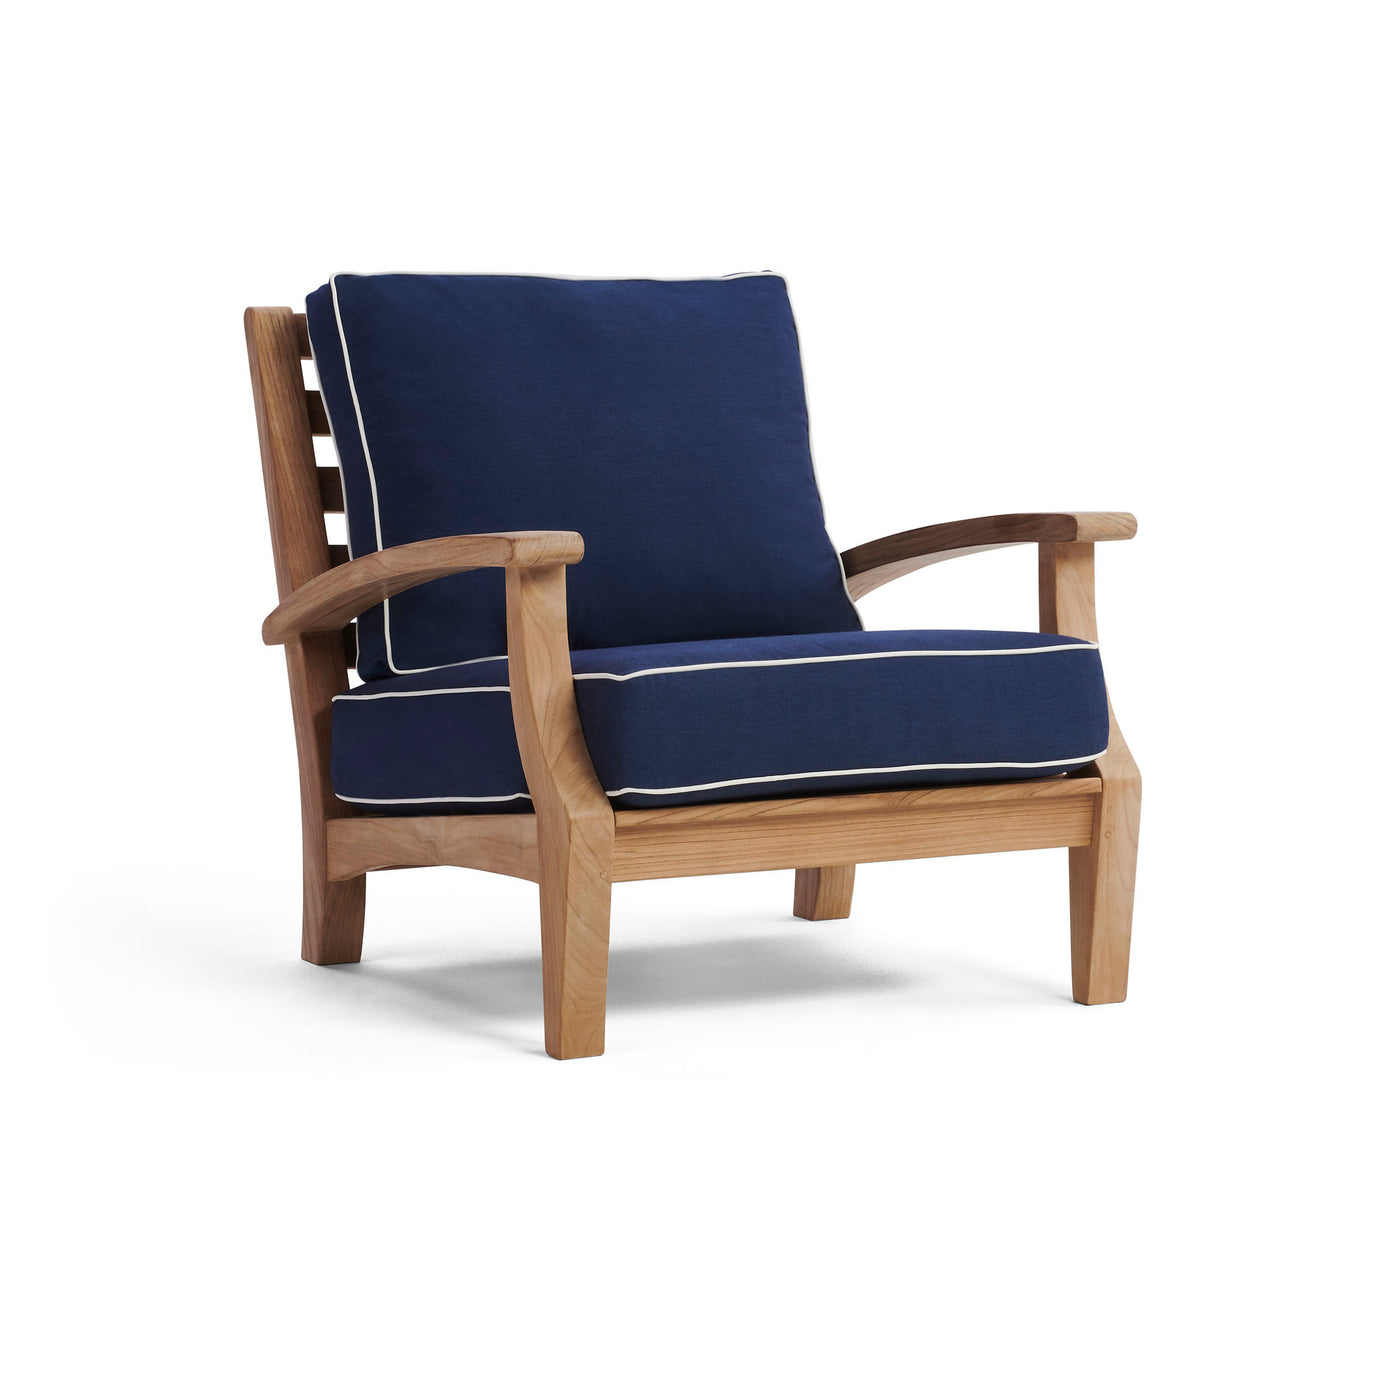  Yardbird Winnie Arm Chair Outdoor Furniture